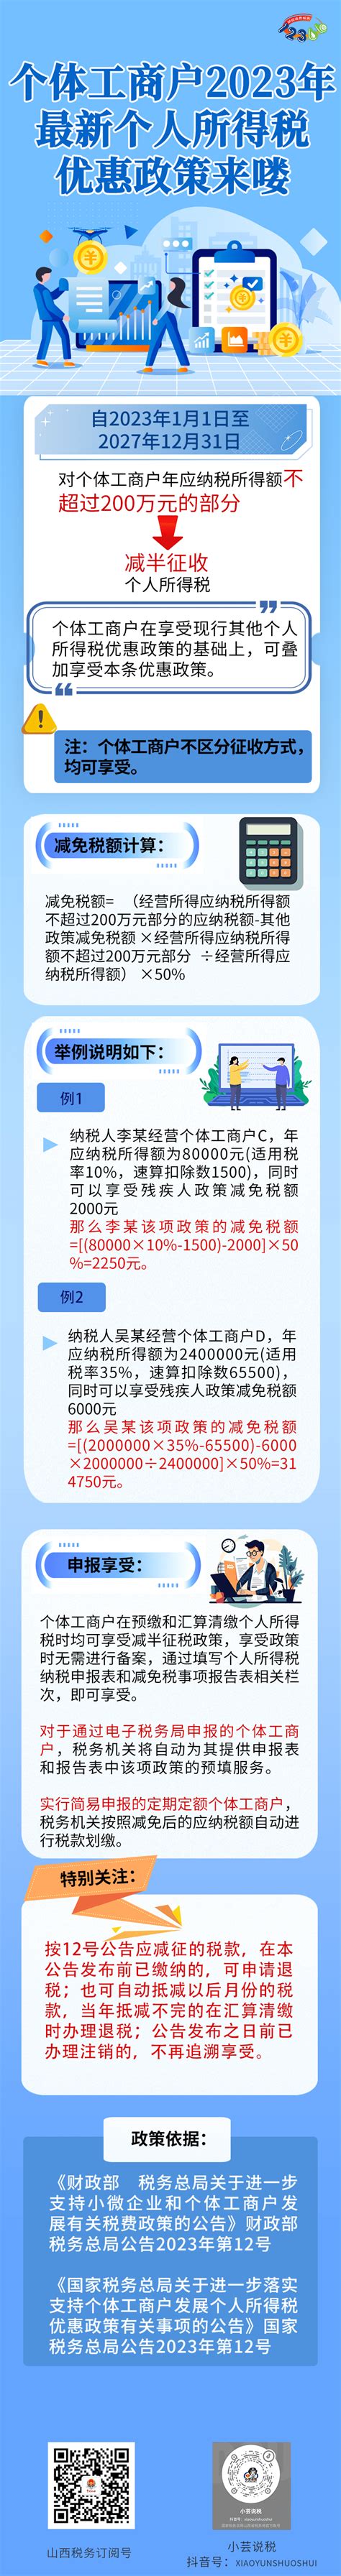 武汉市支持中小微企业和个体工商户贷款政策指南 - 知乎